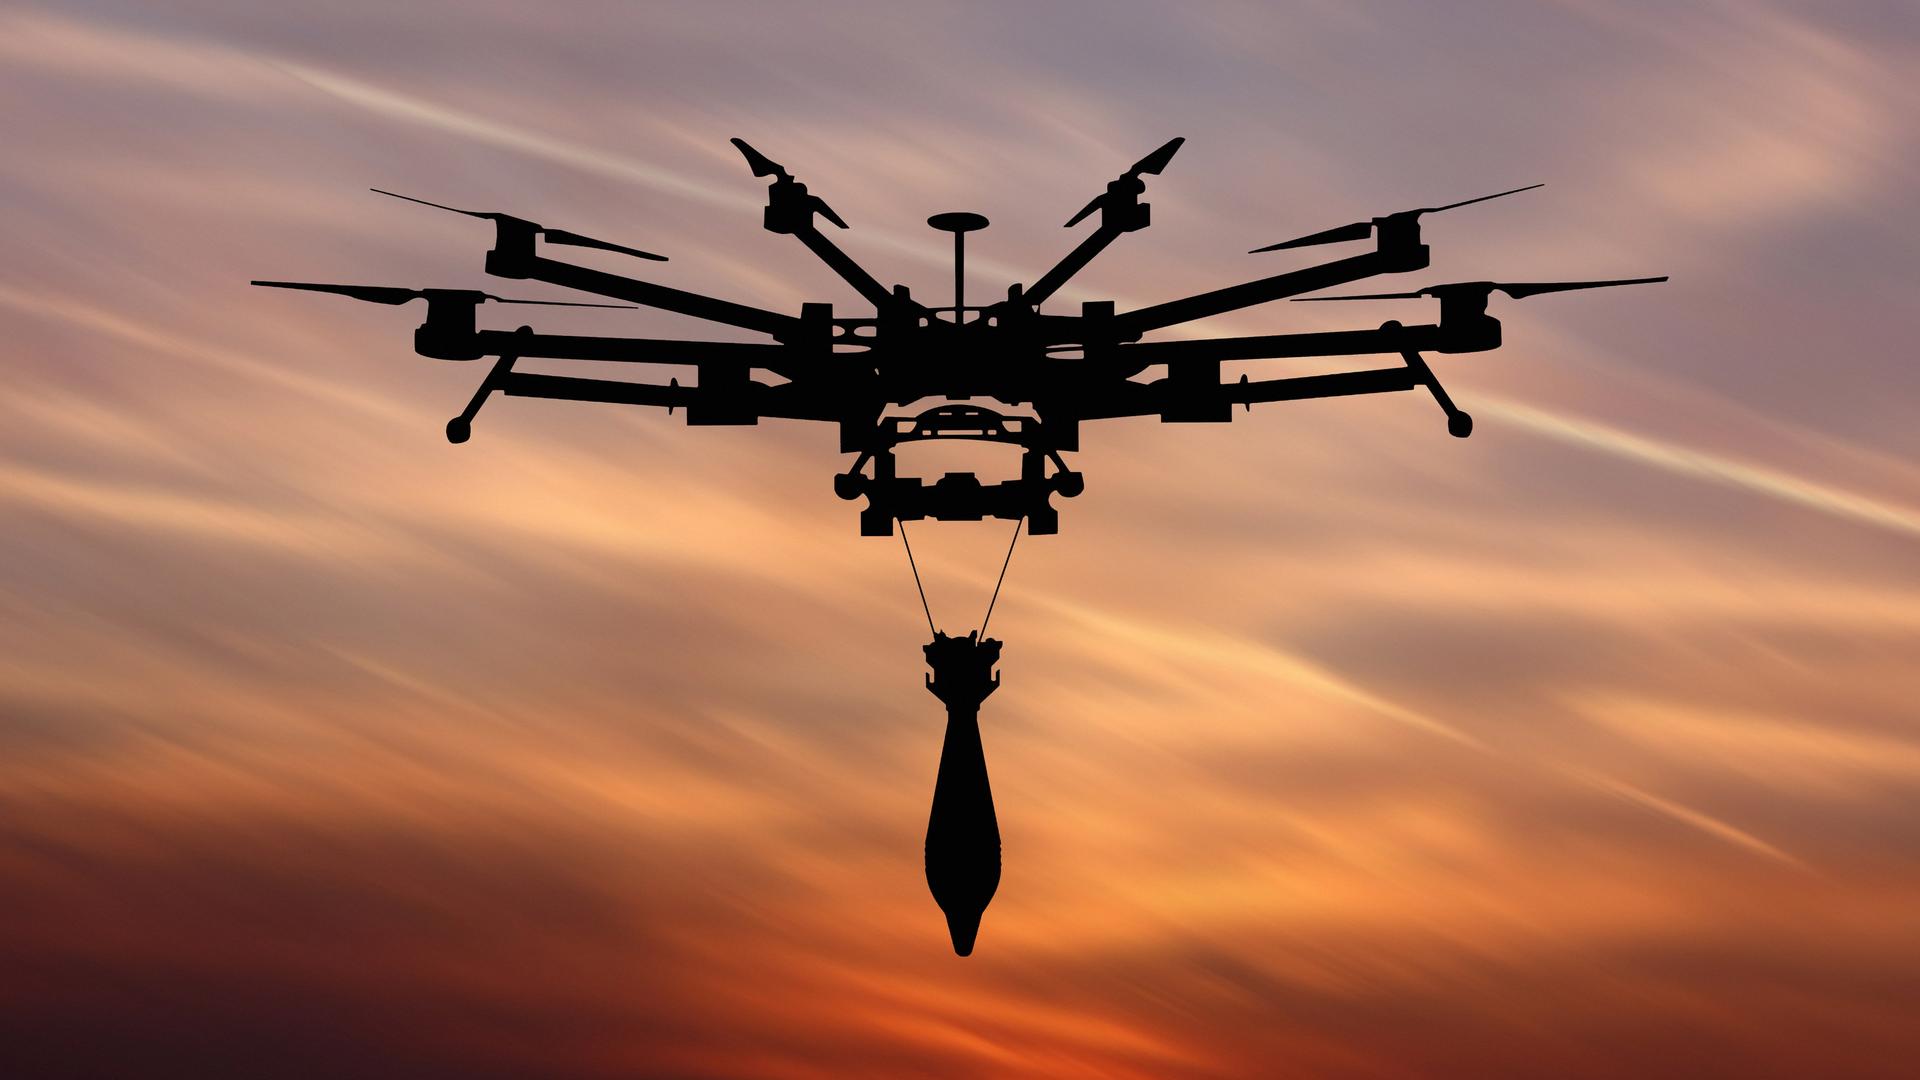 Unter der Drohne hängt eine Bombe an zwei Drähten. Im Hintergrund ist ein Sonnenuntergangshimmel zu sehen.